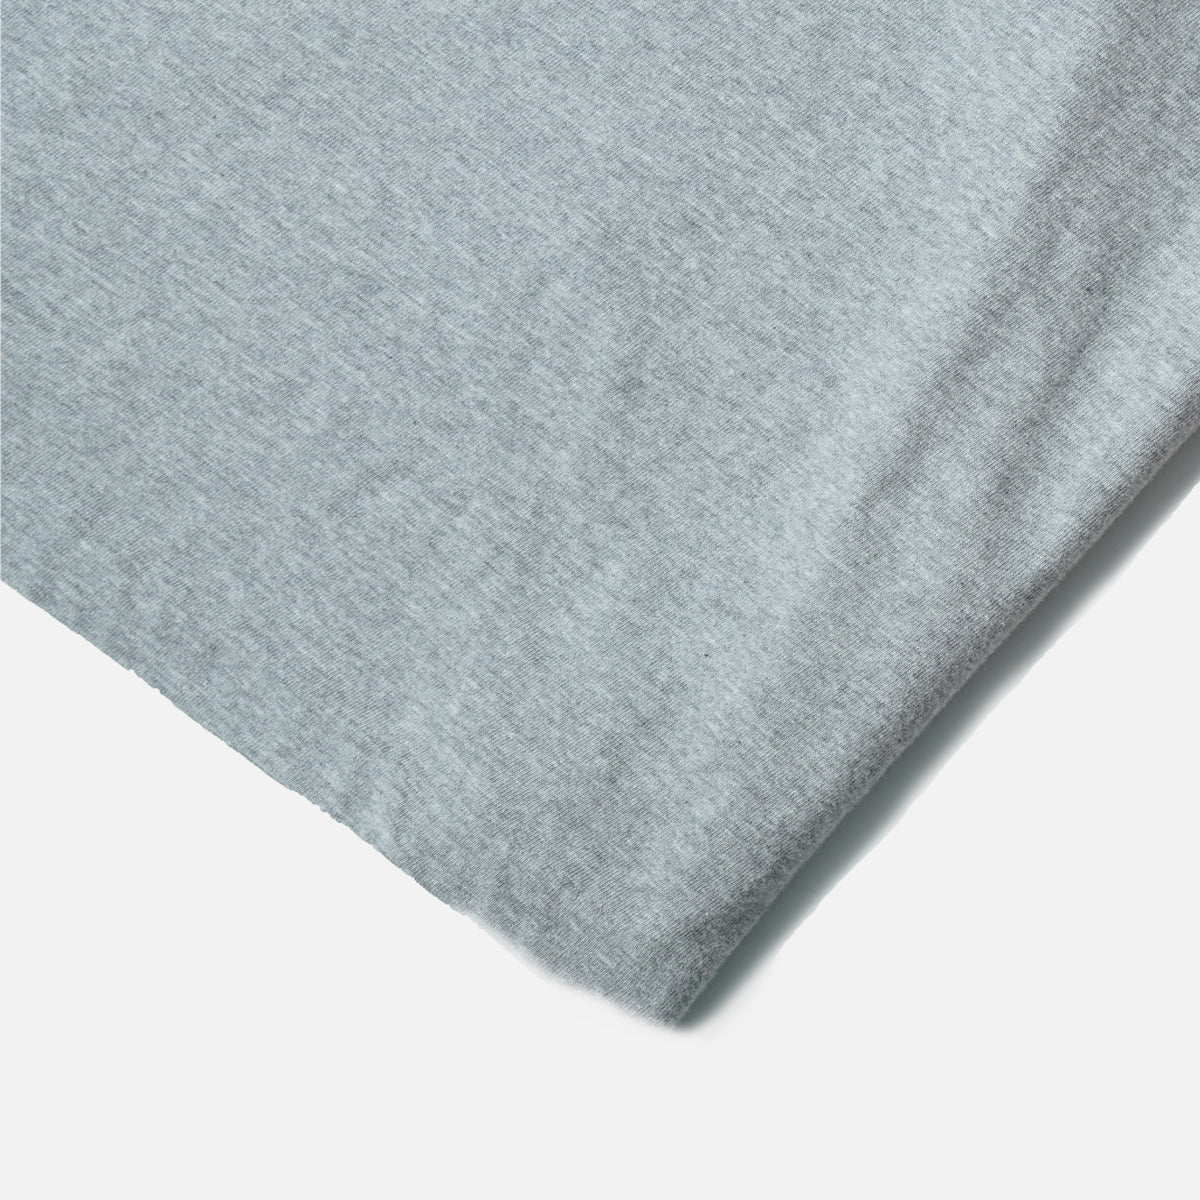 The Decorum Seamless Crewneck Grey T-Shirt